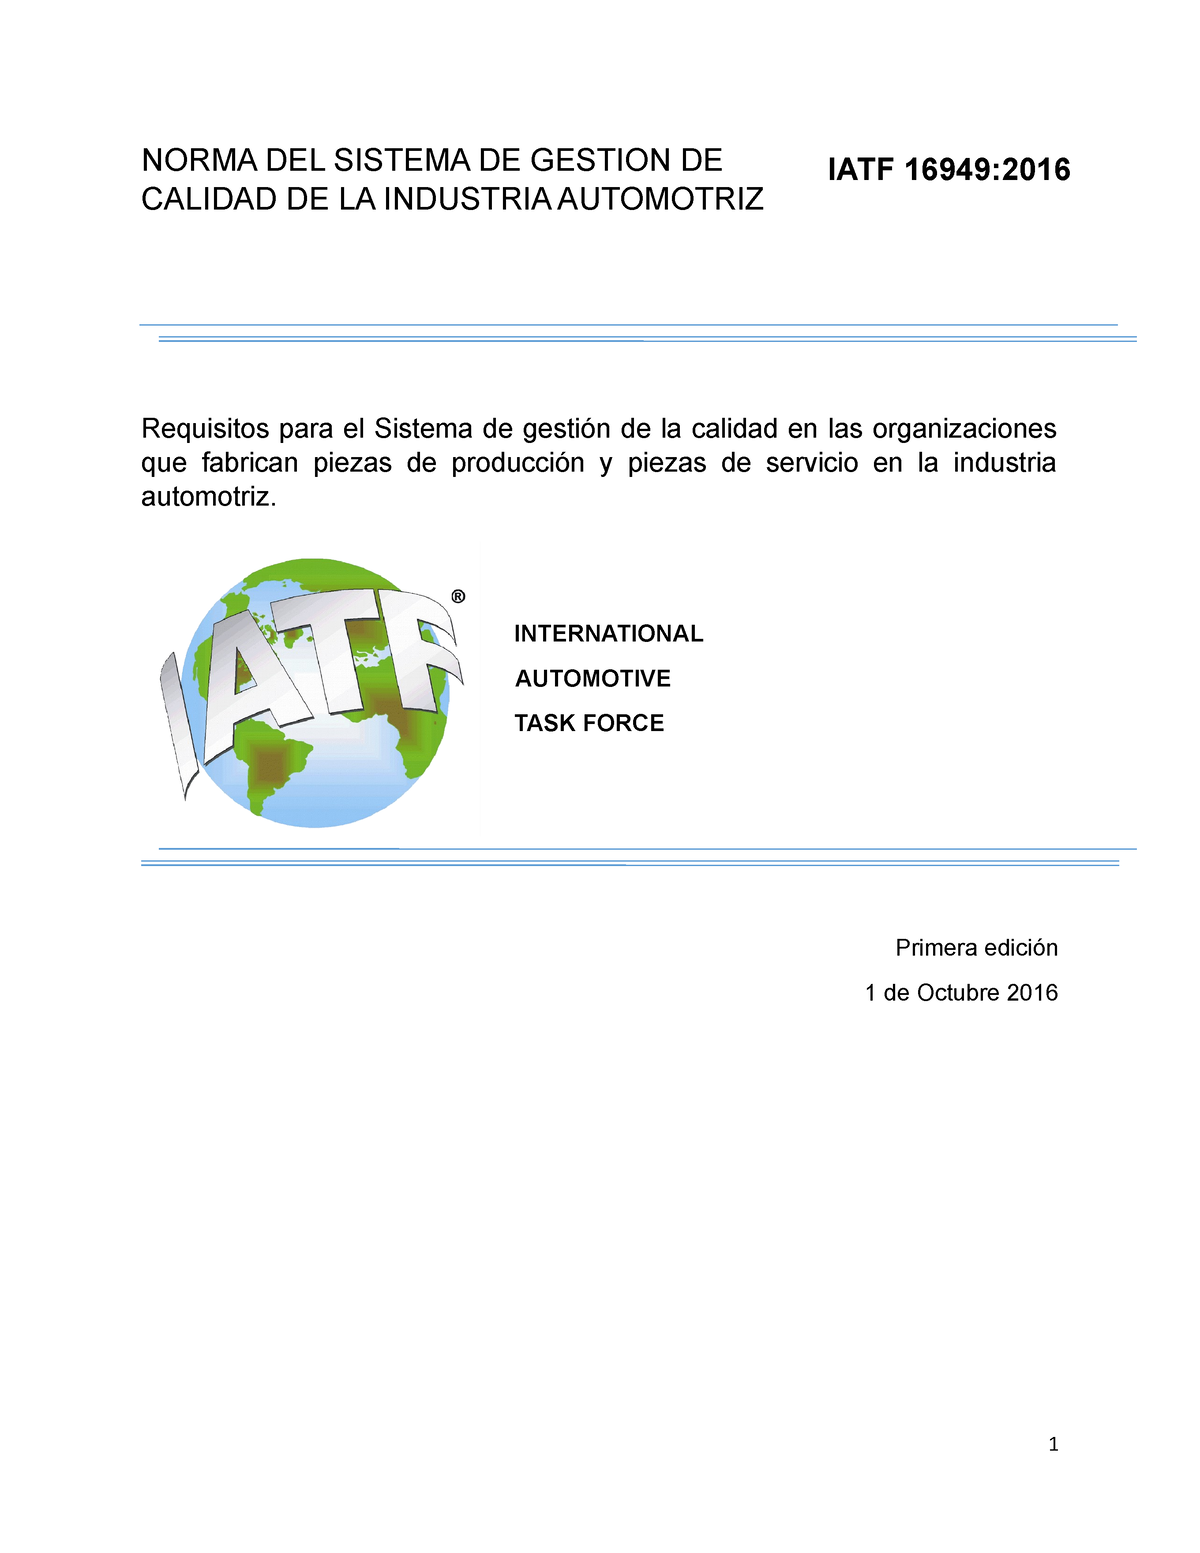 Iatf 16949 2016 Español Norma Del Sistema De Gestion De Calidad De La Industria Automotriz 1719